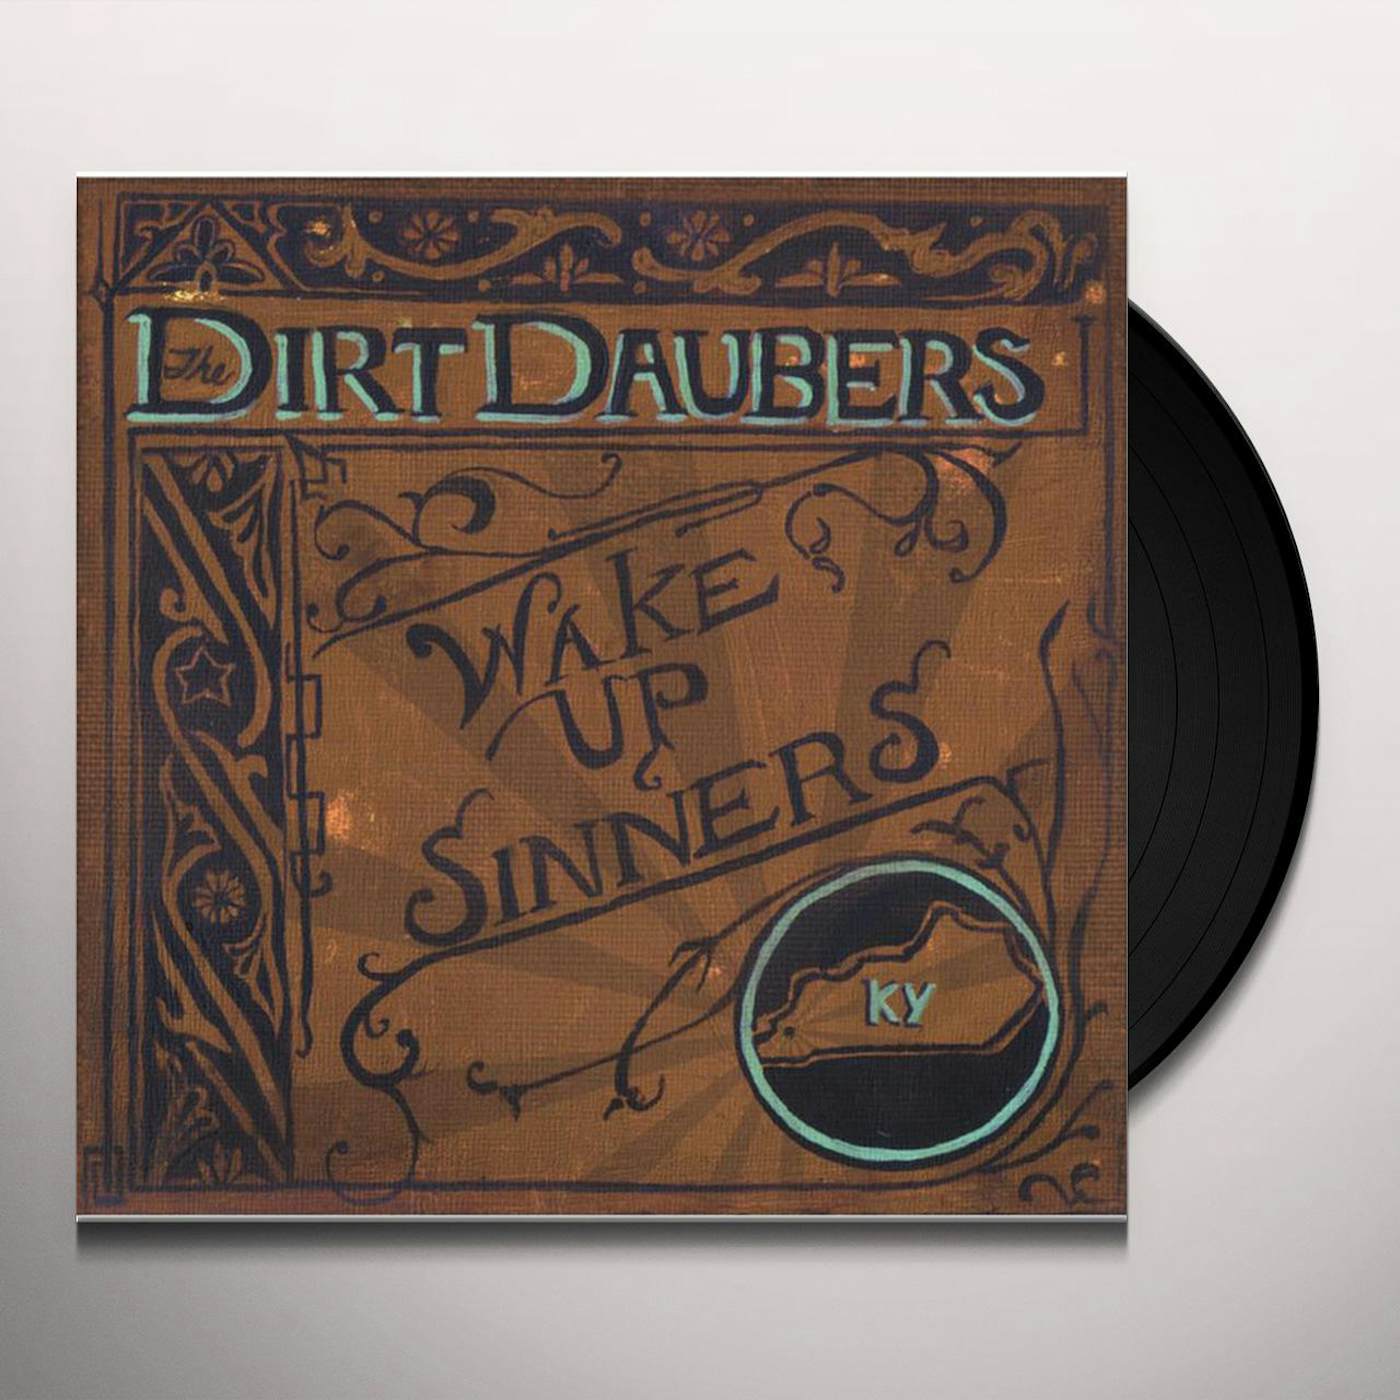 The Dirt Daubers Wake up Sinners Vinyl Record